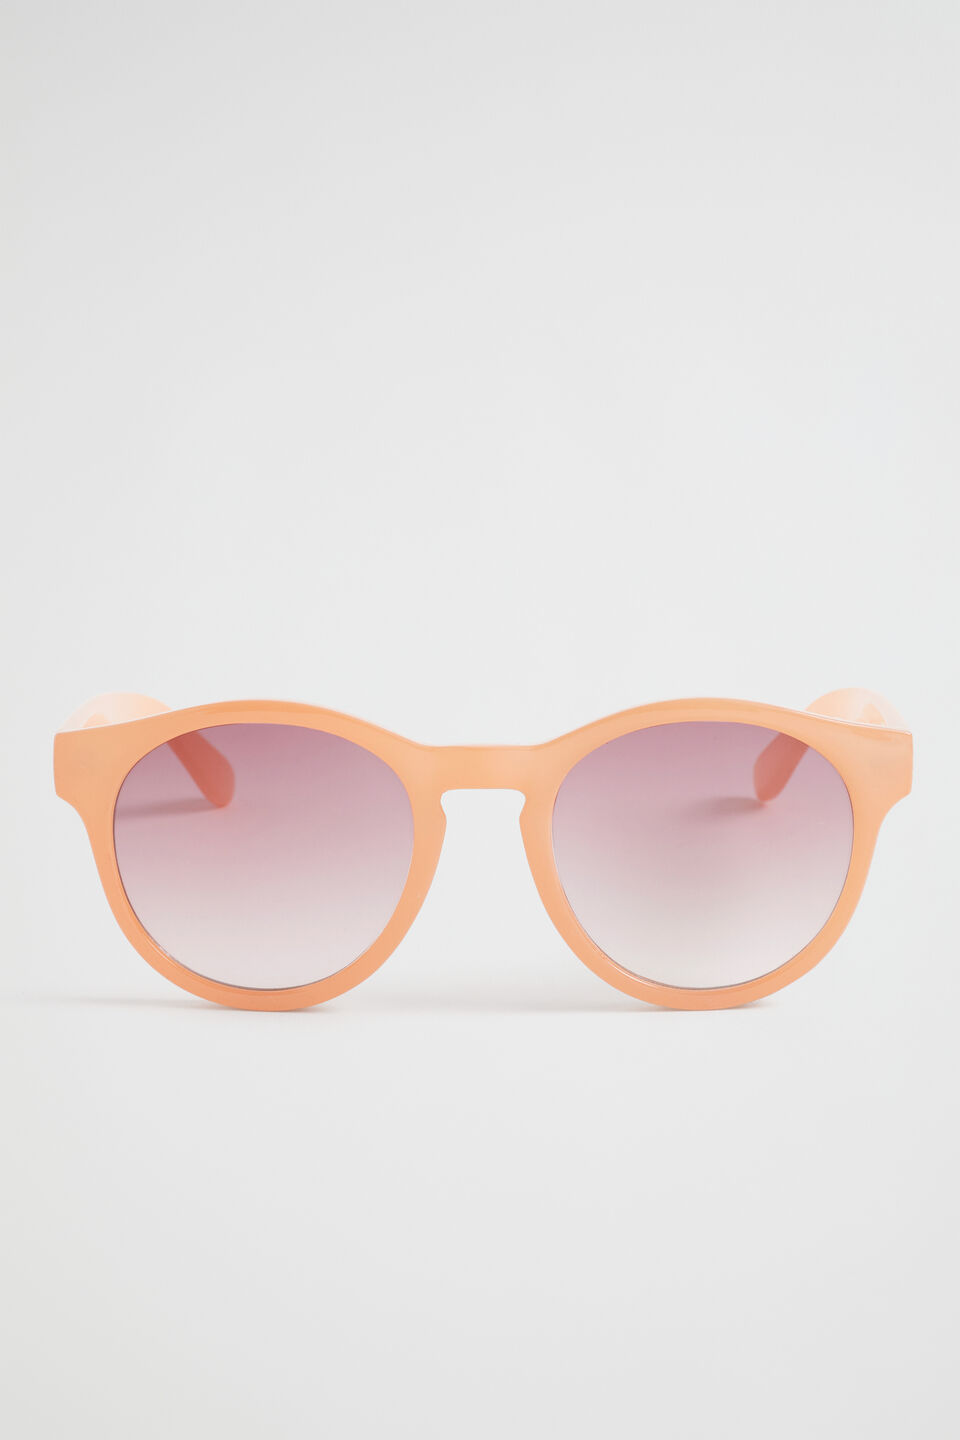 Teen Round Sunglasses  Blush